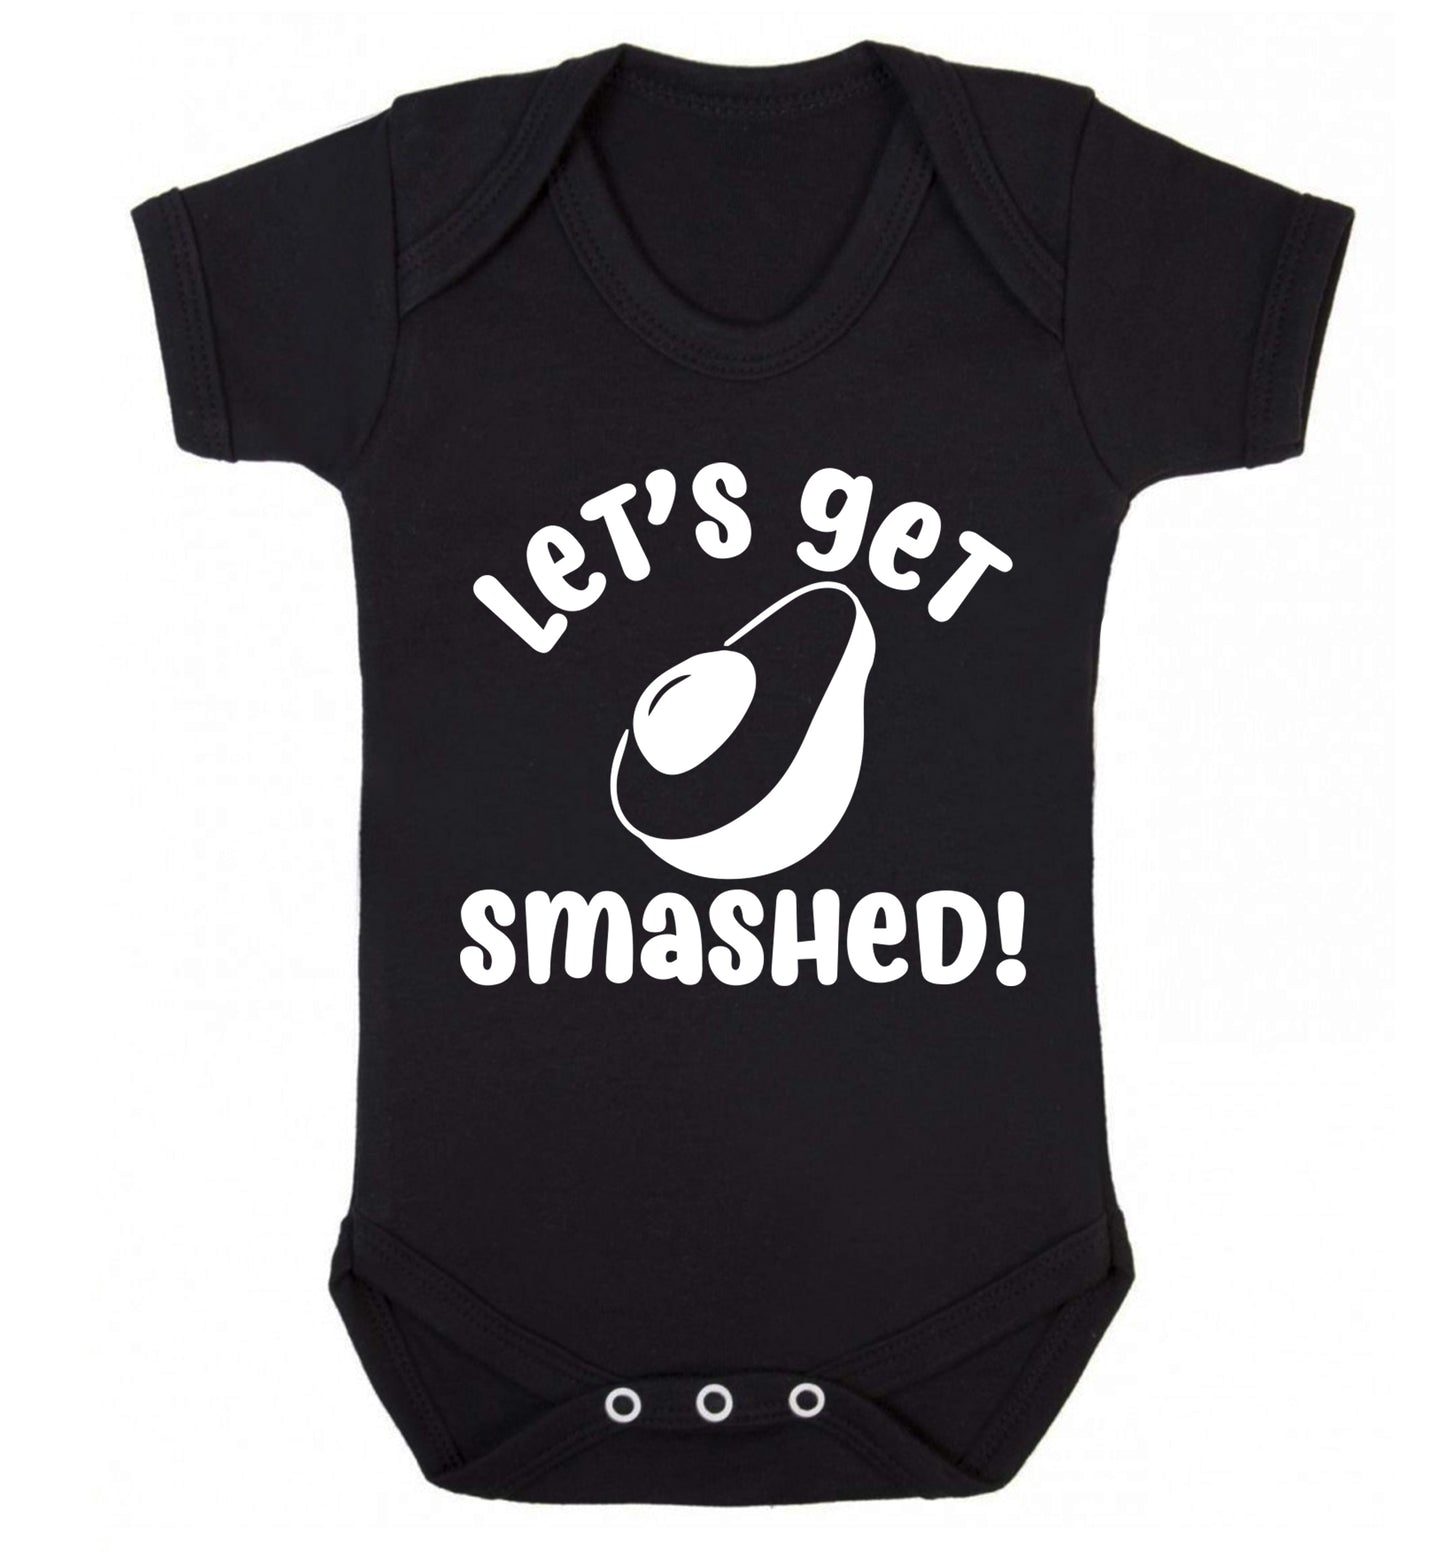 Let's get smashed Baby Vest black 18-24 months